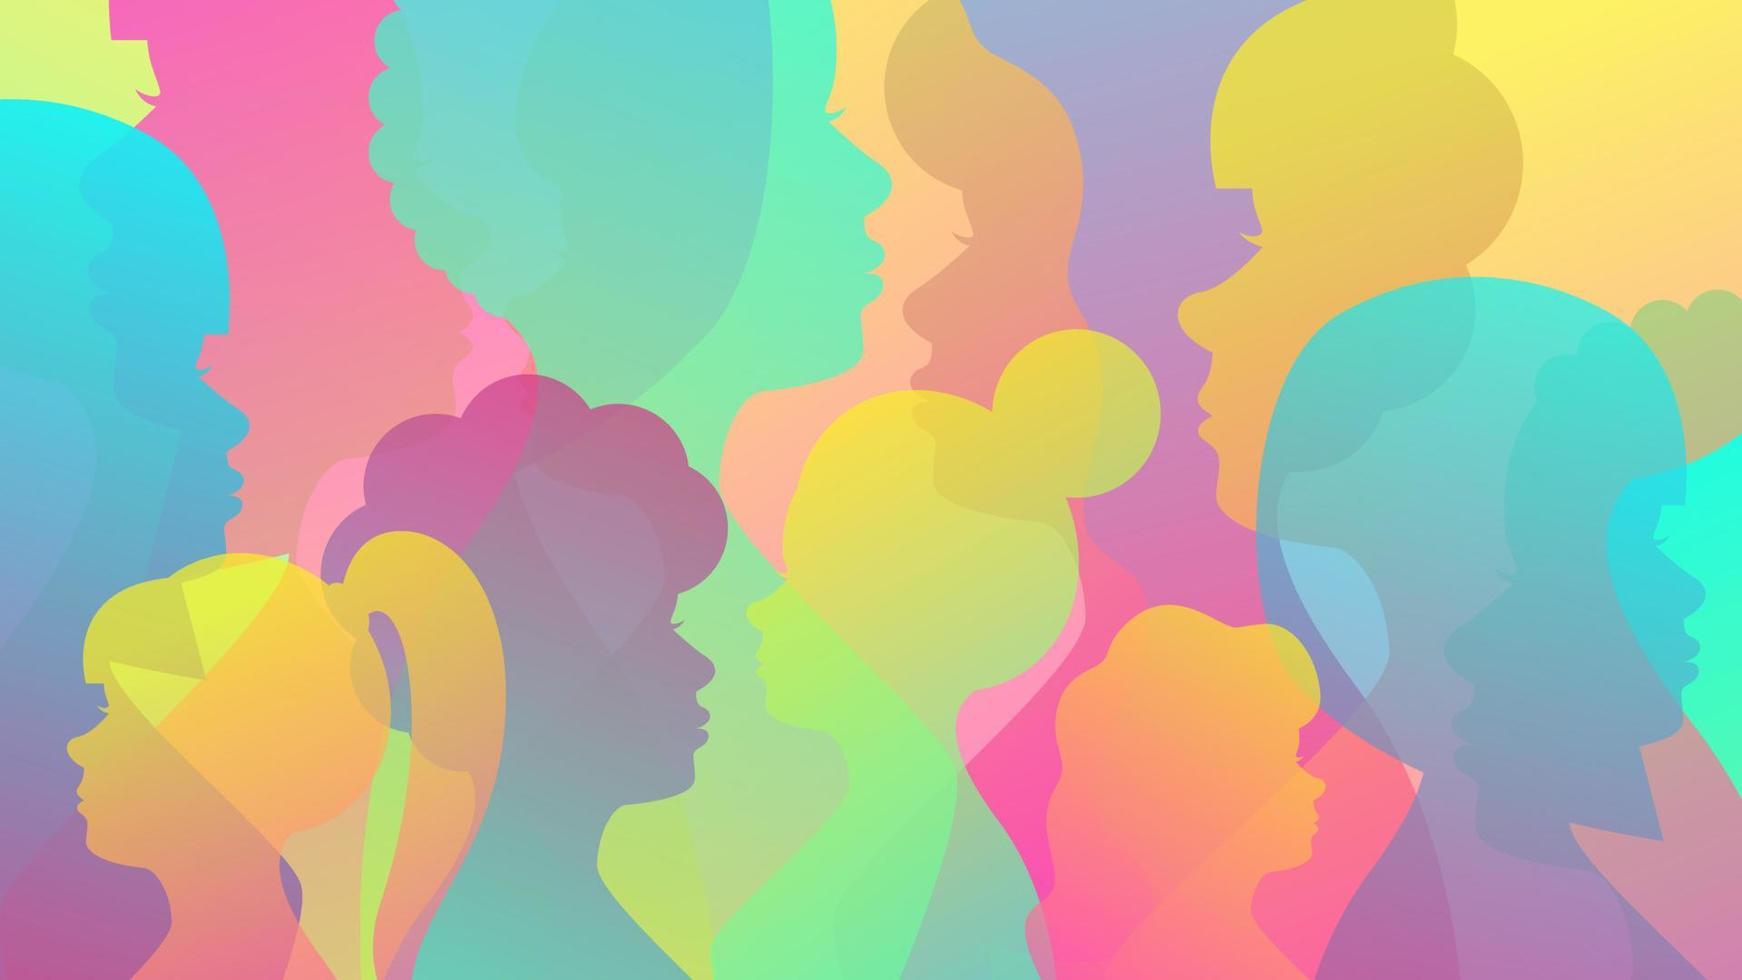 arrière-plan coloré de silhouettes féminines. concept pour la diversité, le féminisme, la journée internationale de la femme. illustration de stock de vecteur. vecteur